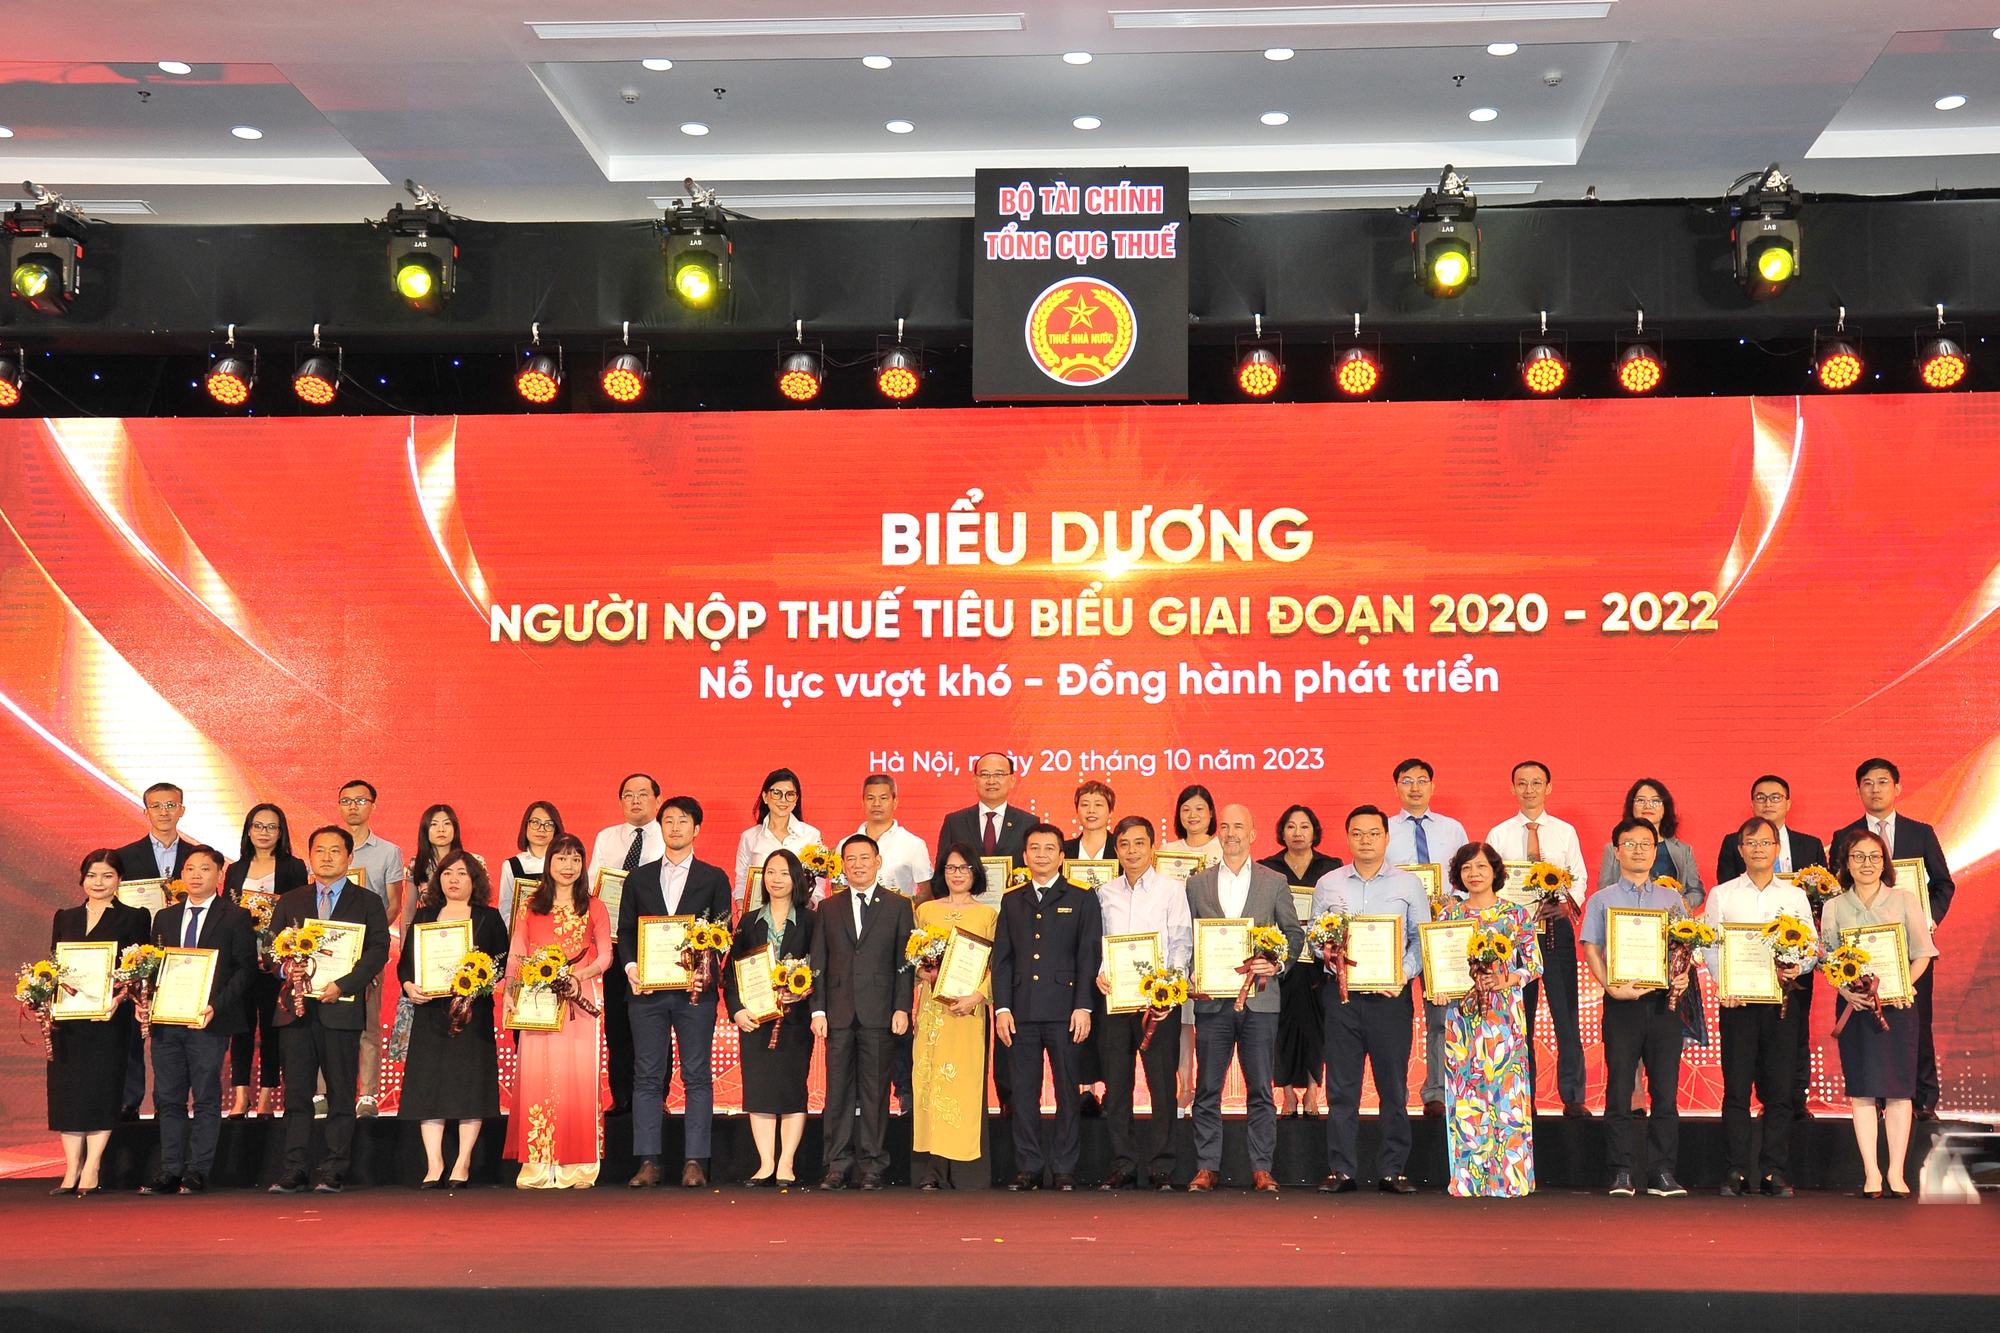 Ông Hồ Song Ngọc - Tổng Giám đốc Công ty CP Tôn Đông Á đại diện nhận bằng khen vinh danh doanh nghiệp nộp thuế tiêu biểu giai đoạn 2020 - 2022